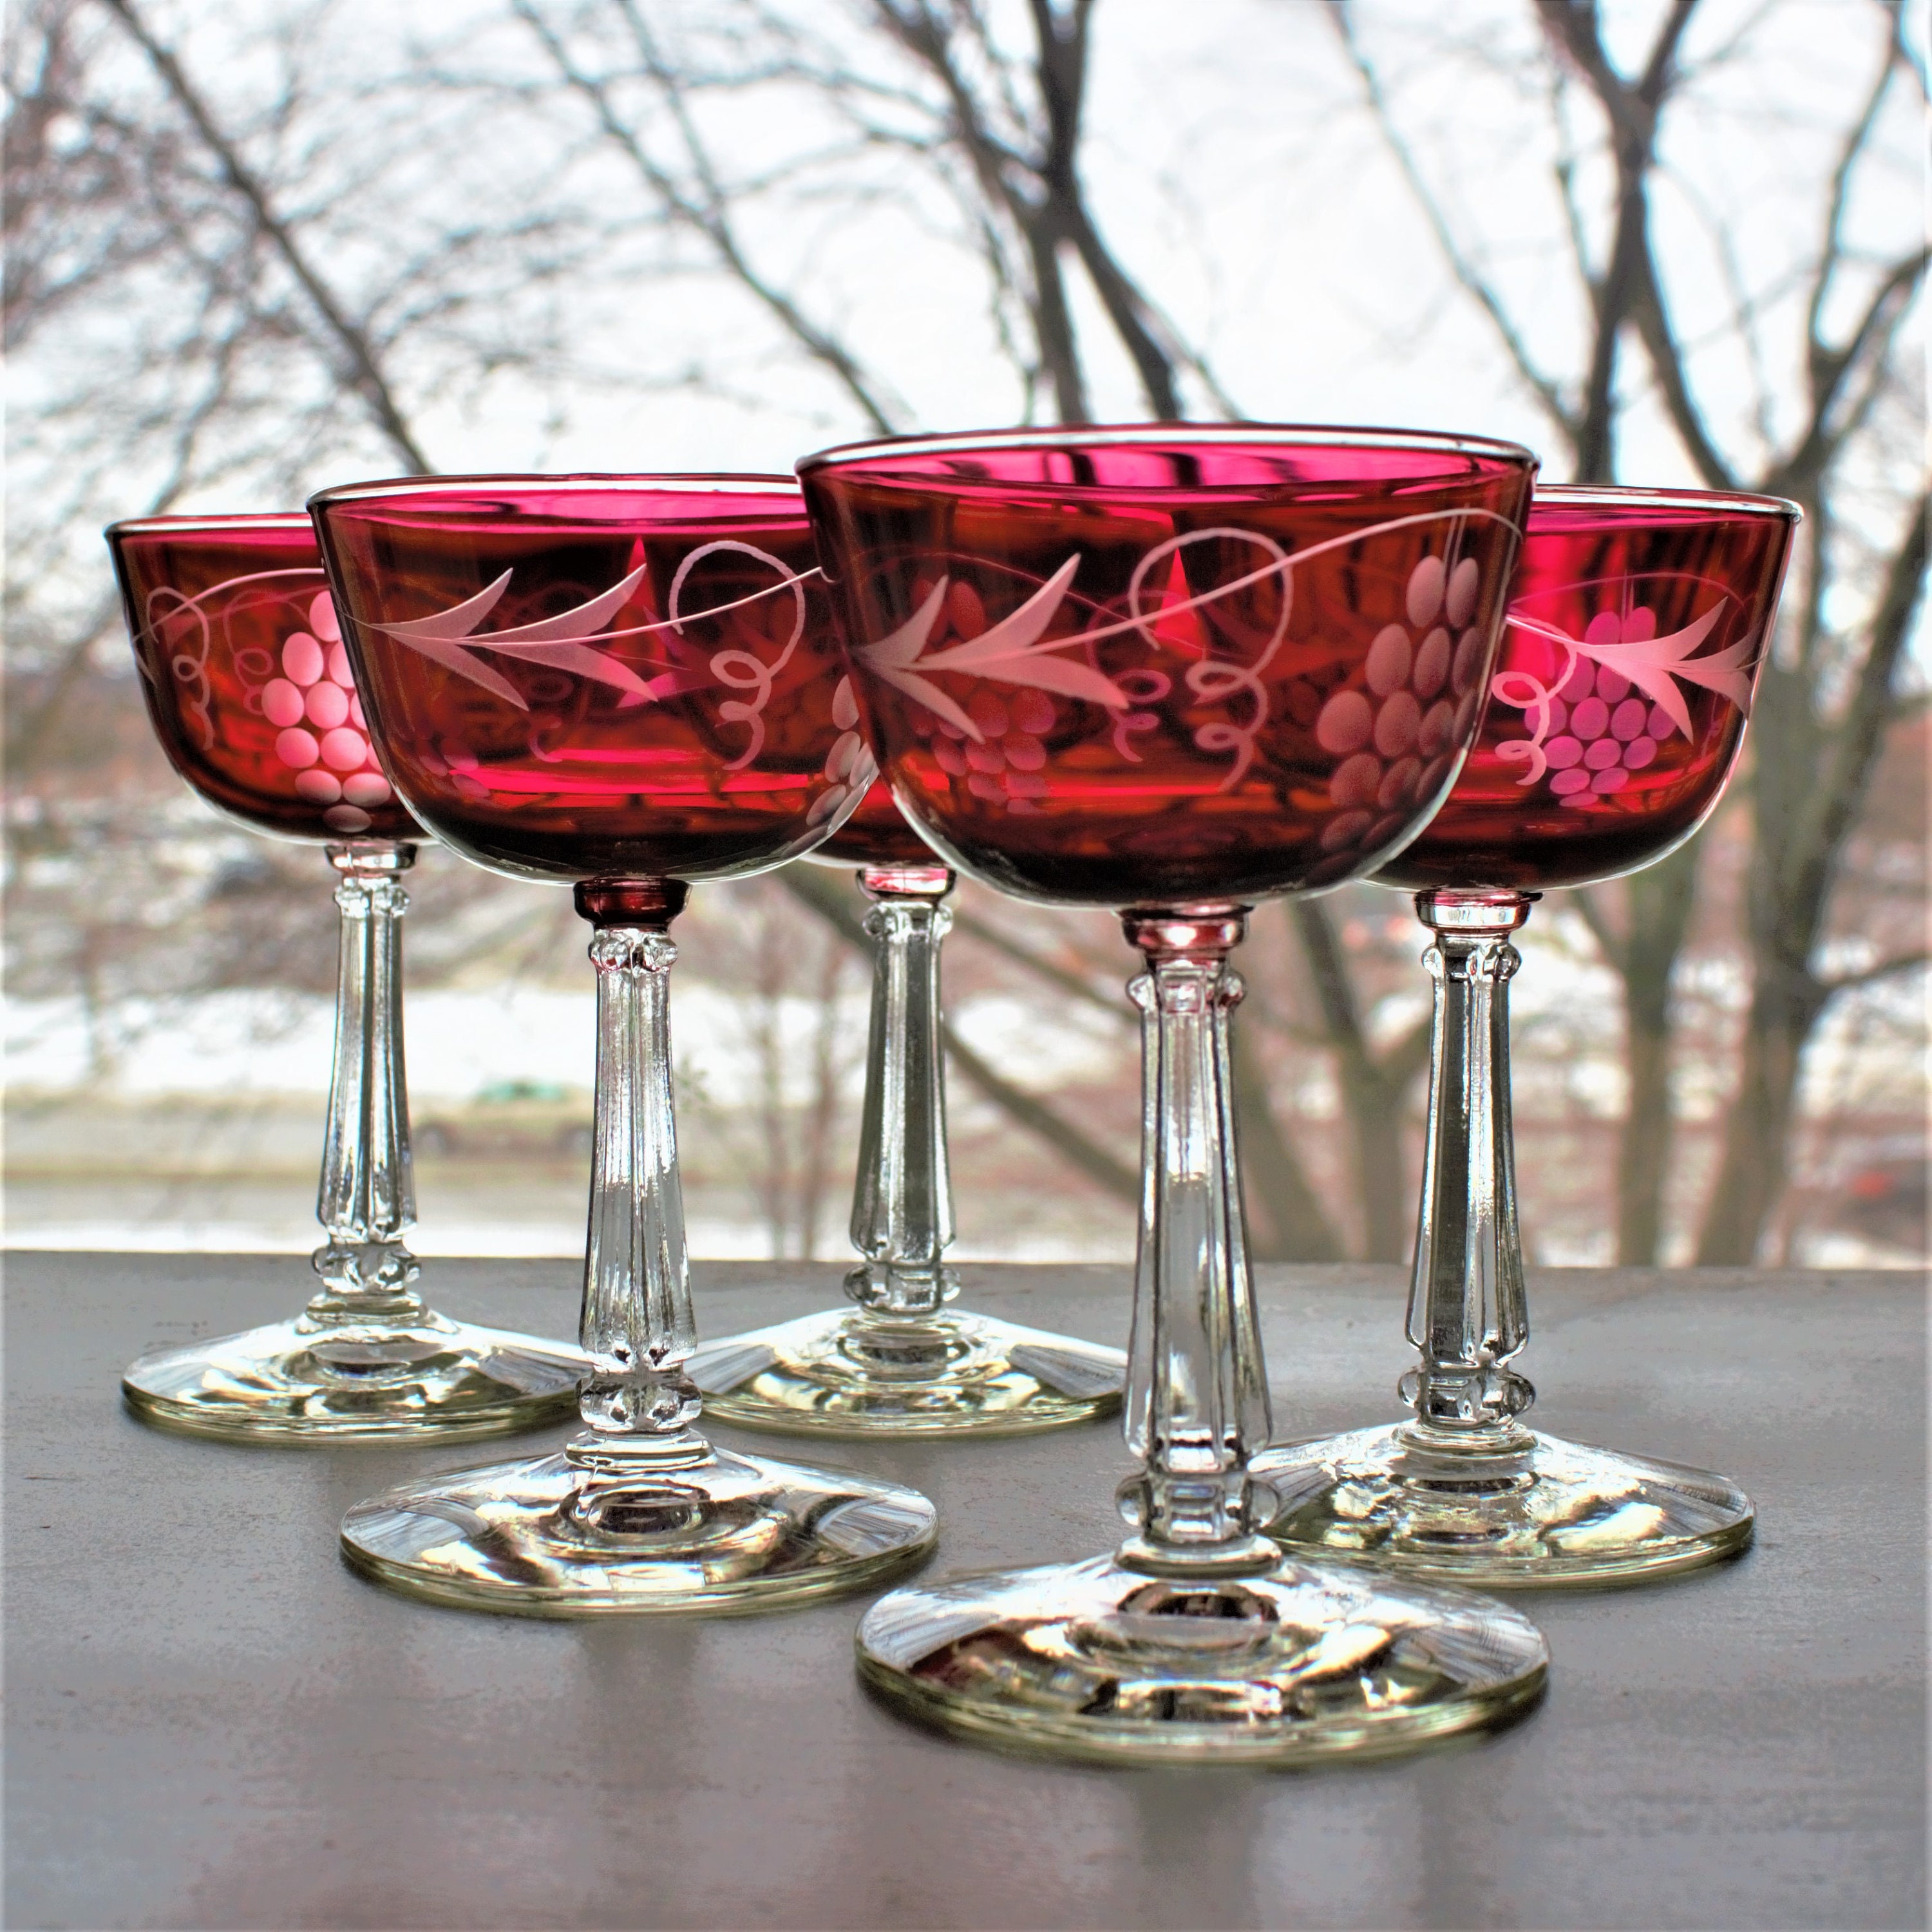 Cristalería roja vintage, juego de 6 copas de vino tinto grabadas